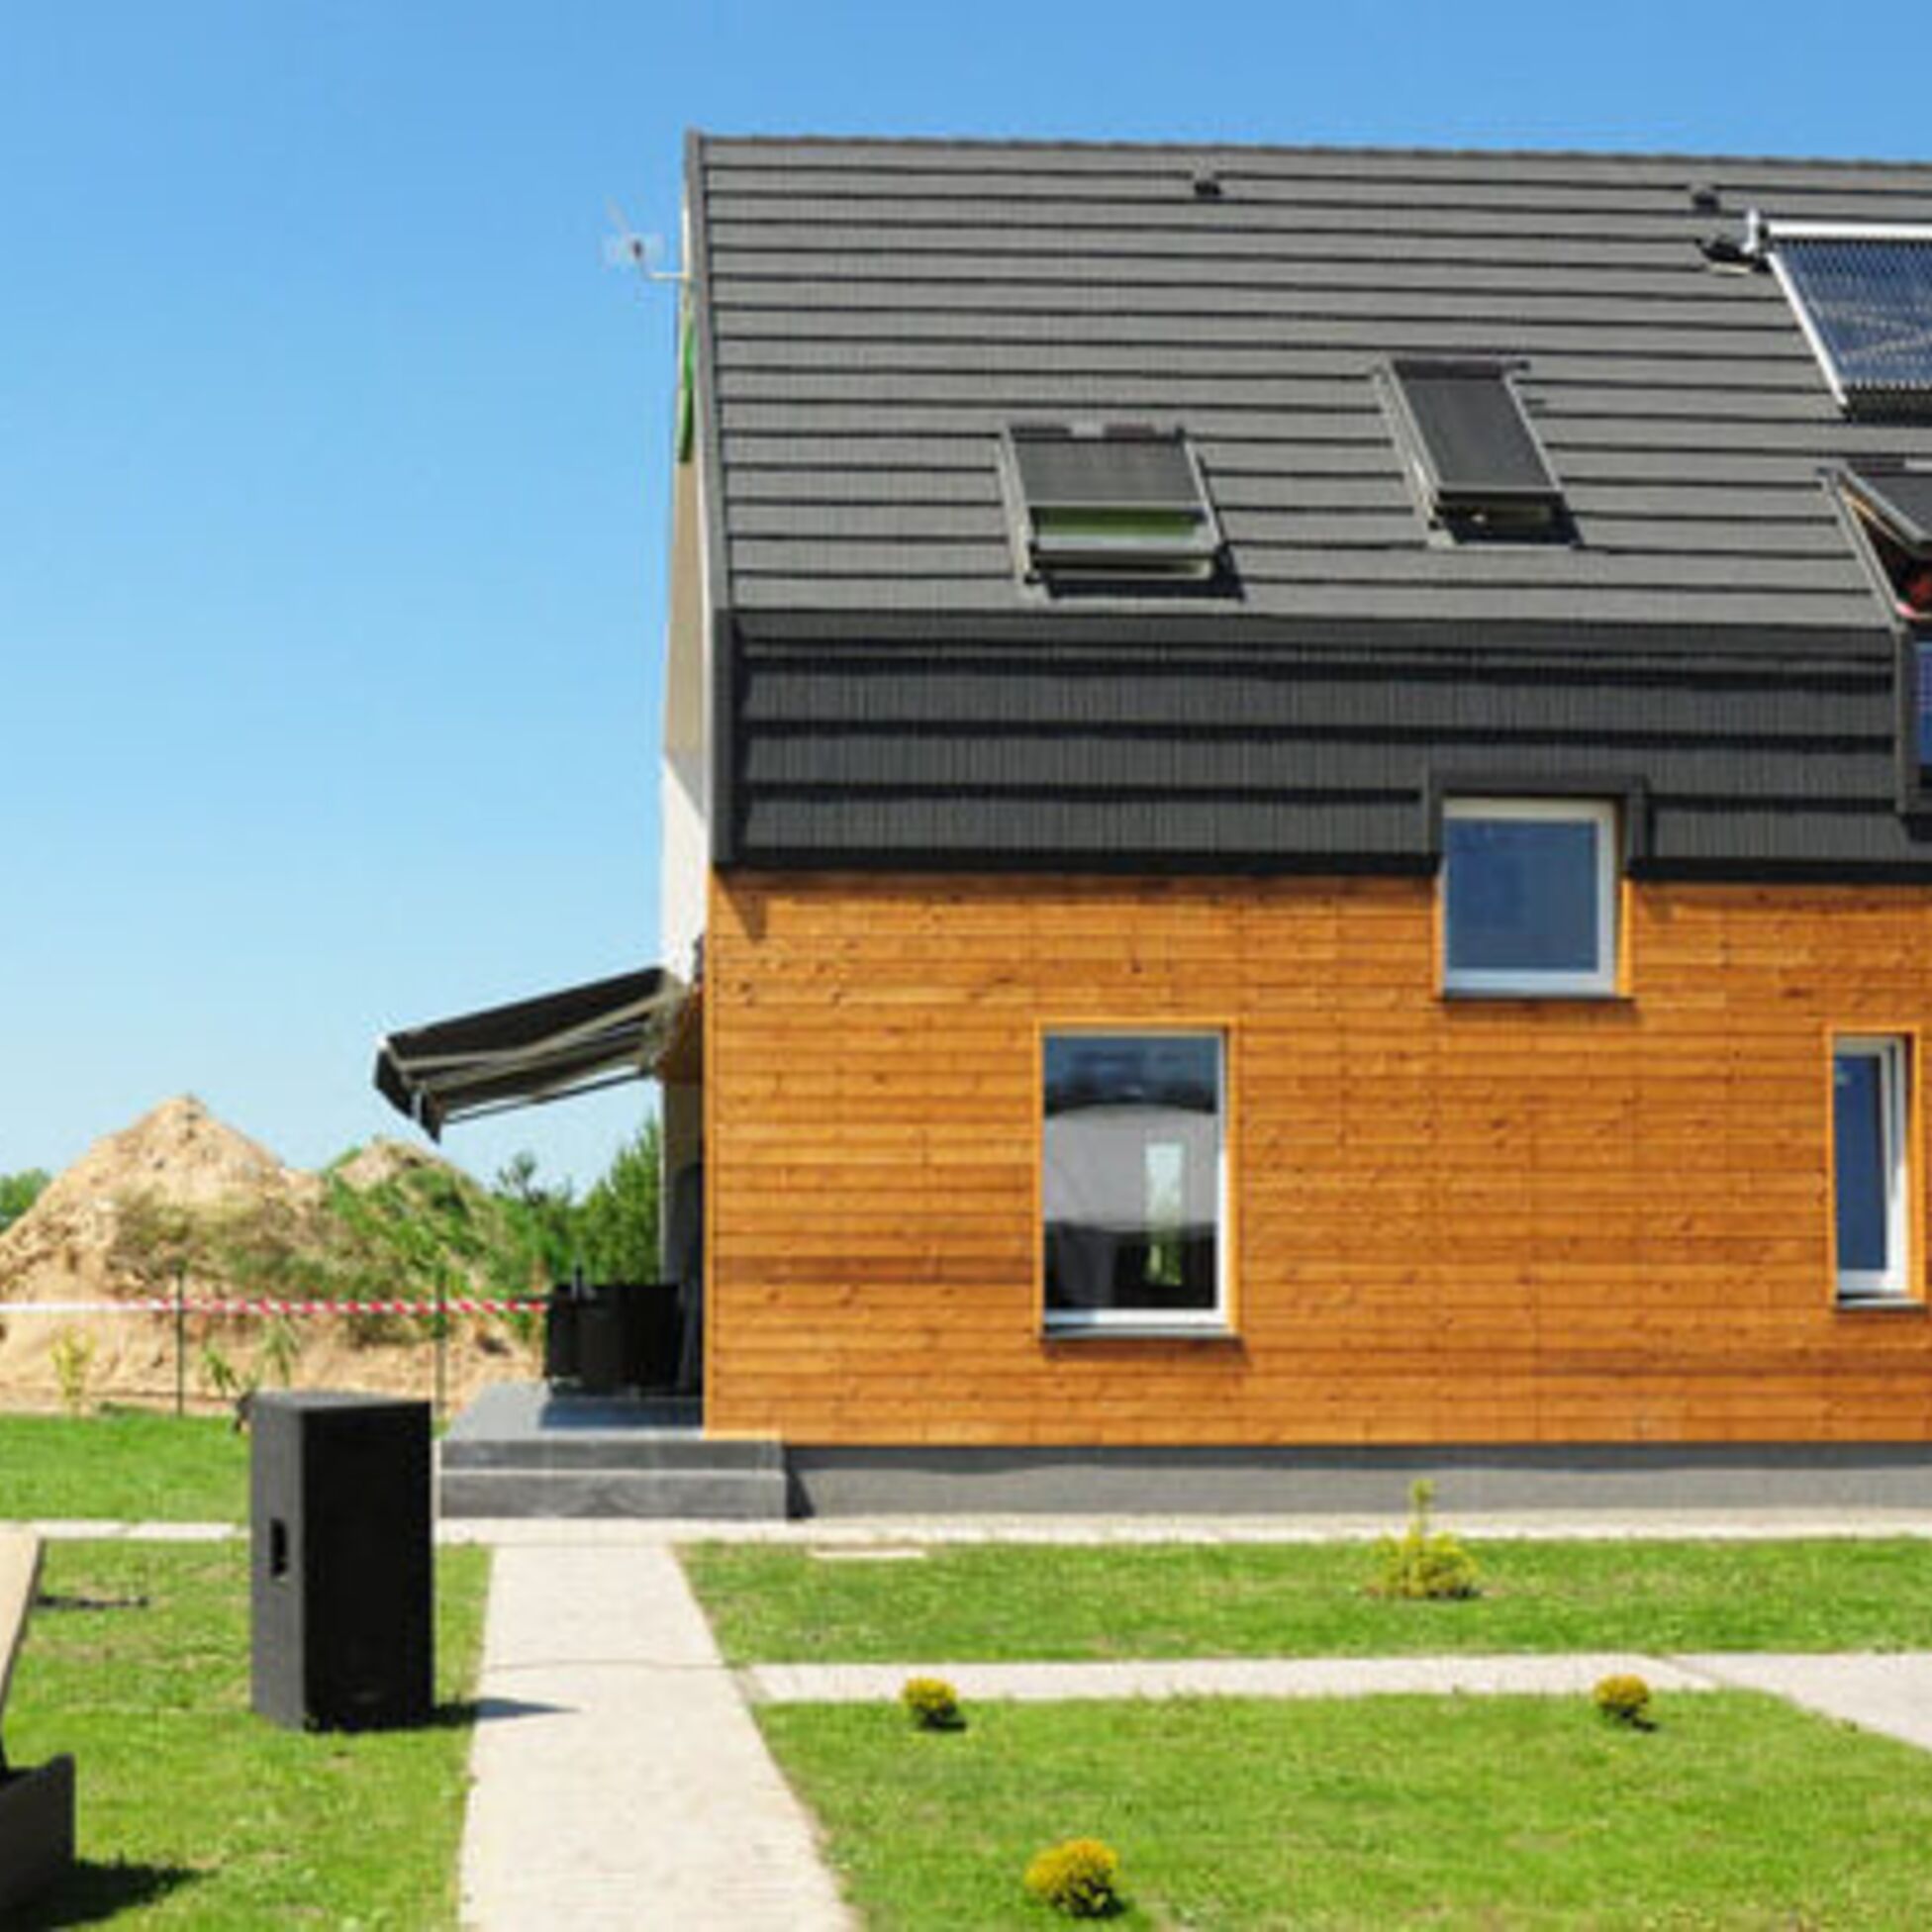 Ein Passivhaus nutzt Sonnenenergie zur Wärmegewinnung